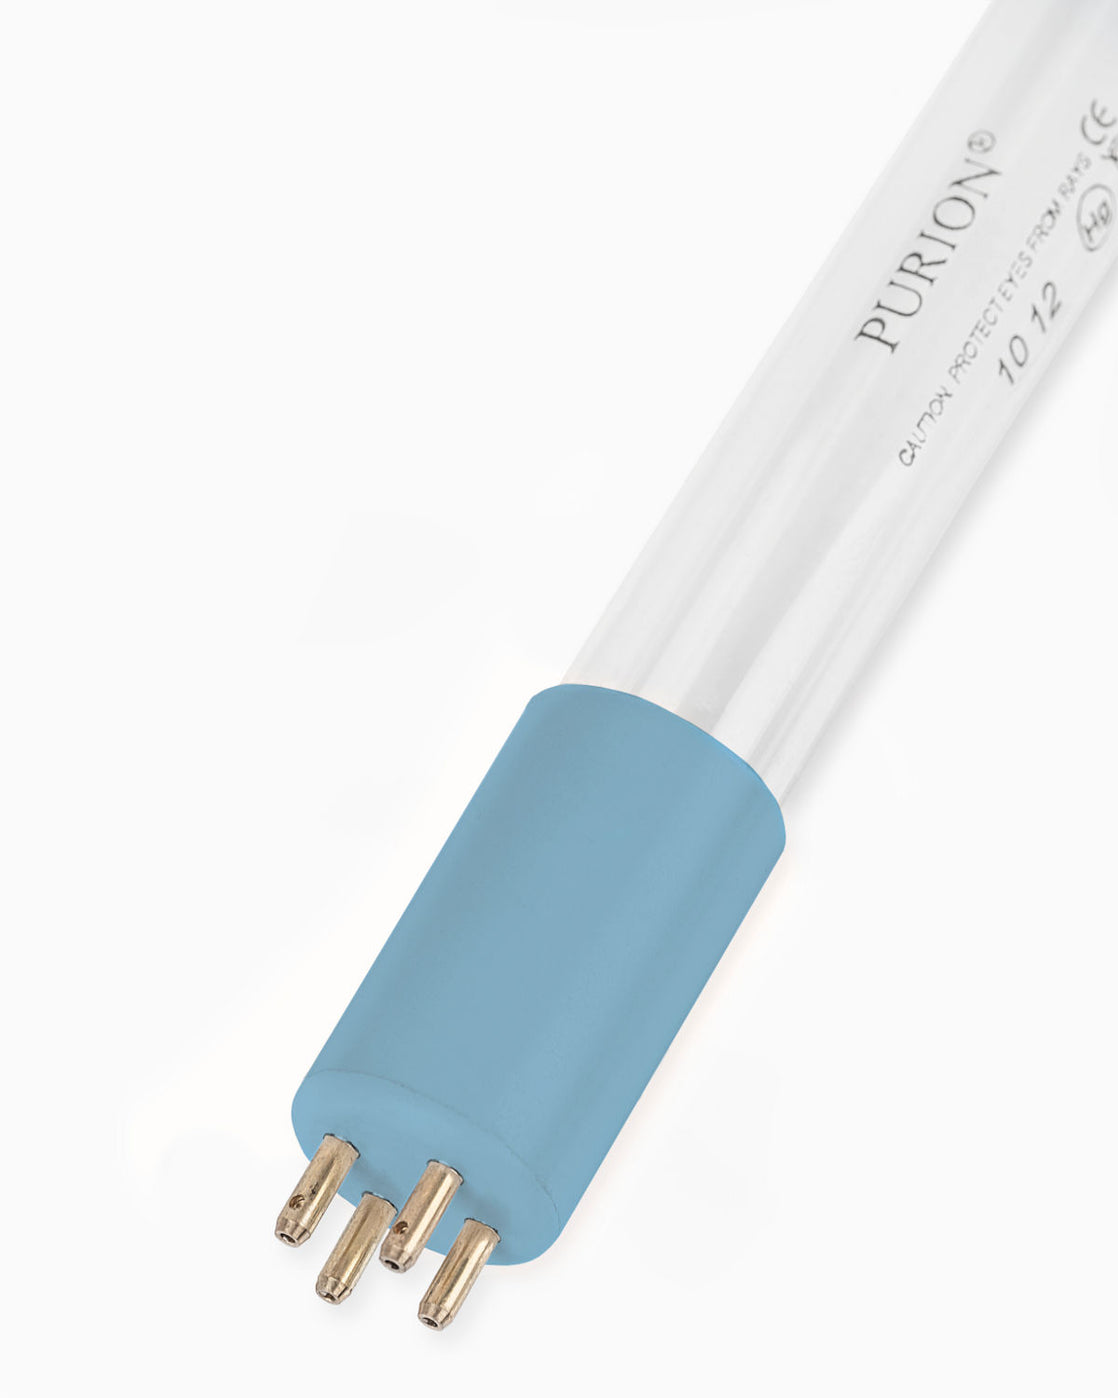 Eine blaue PURION 2501 DUAL OTC Bundle-Lichtröhre auf weißem Hintergrund zur UV-C-Desinfektion von Poolwasser. Der PURION 2501 Dual ist eine einfach zu bedienende und wartungsarme Lösung zur Pooldesinfektion der PURION GmbH.